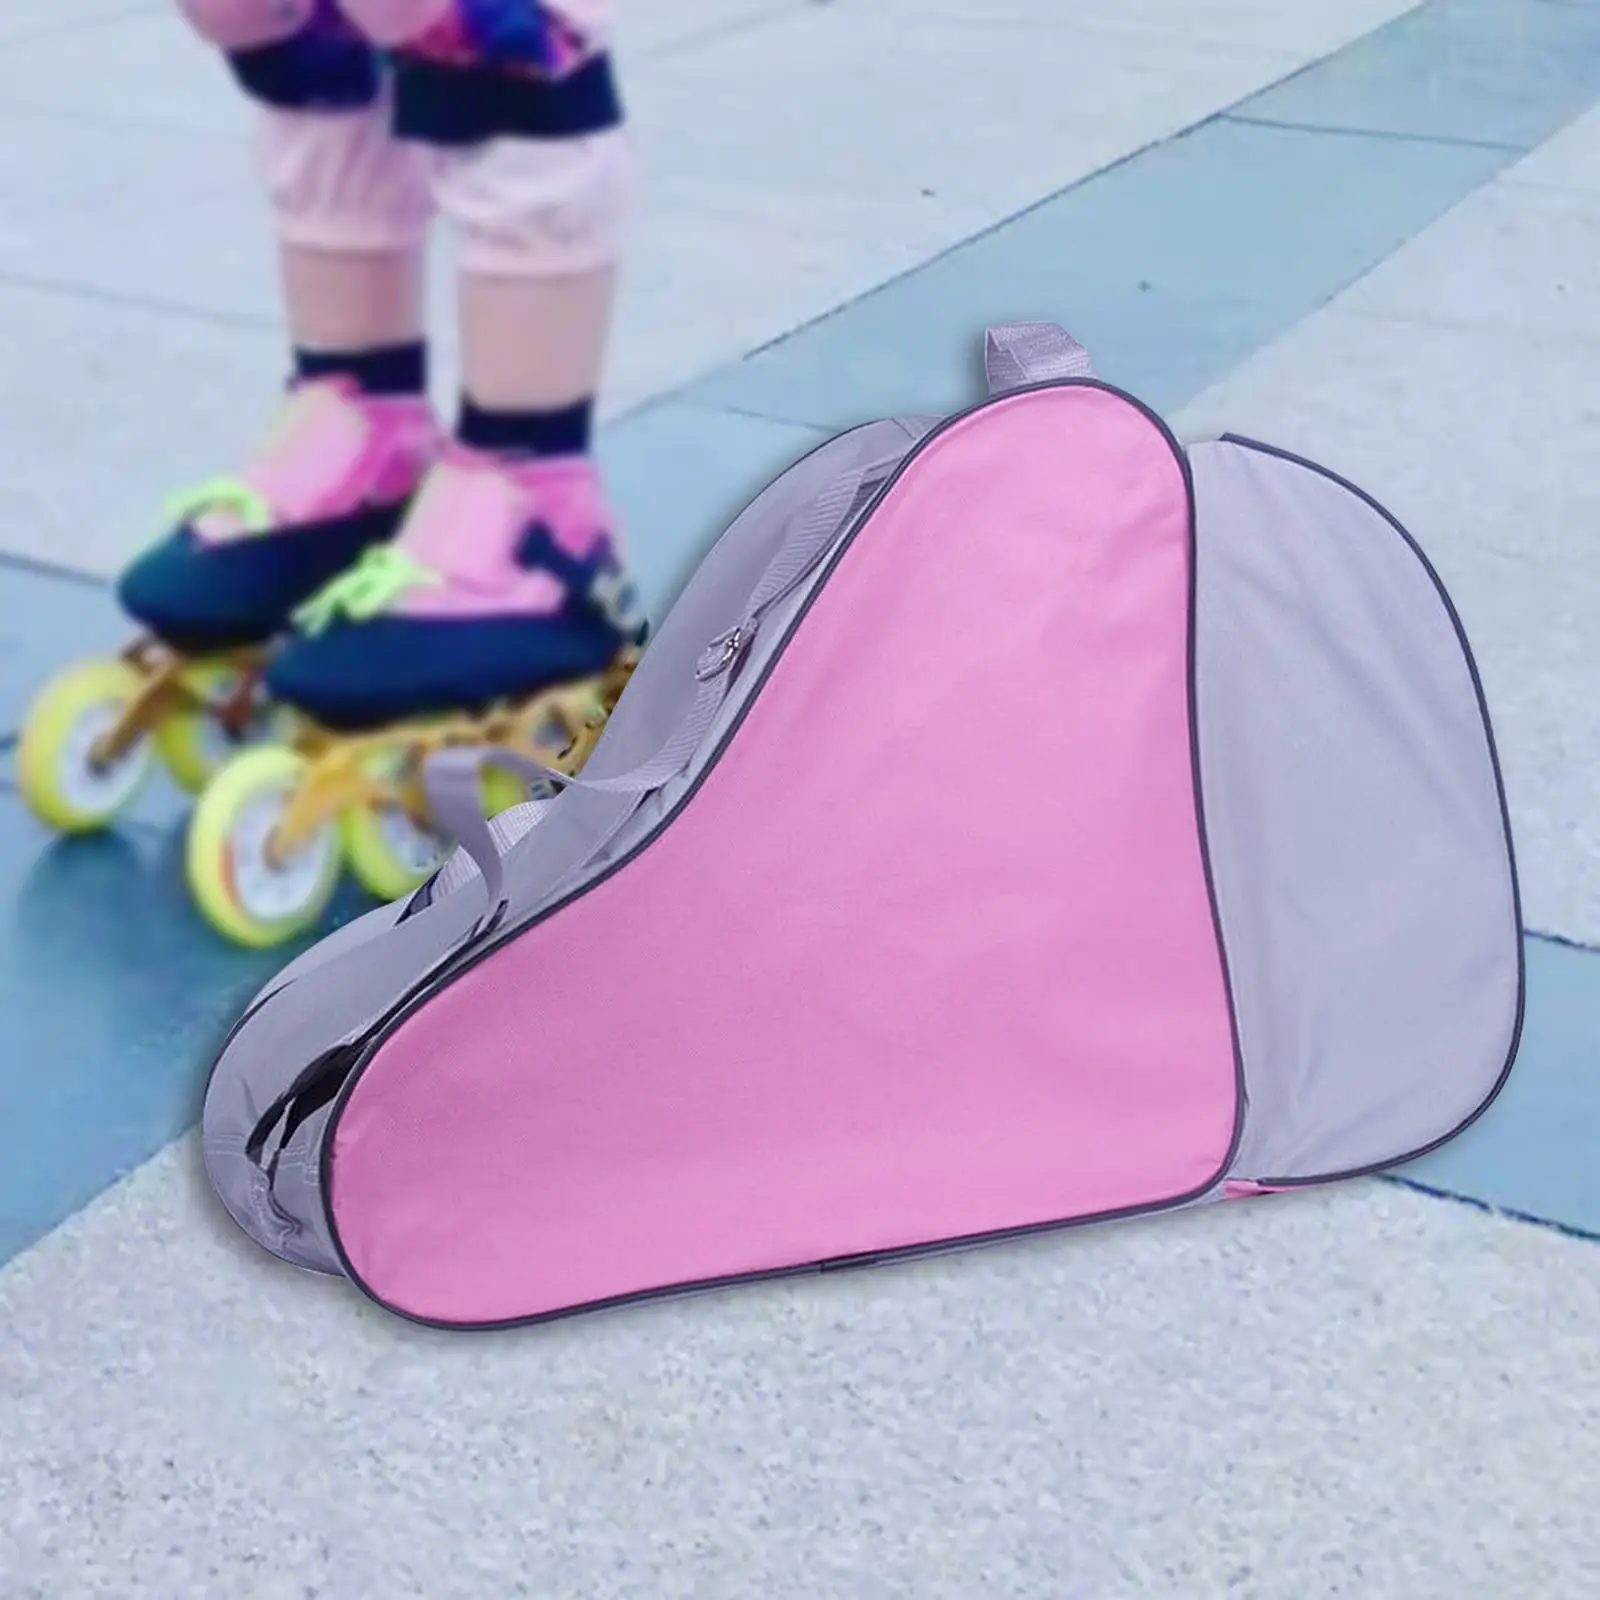 Roller Skate Bag Large Capacity Roller Skate Carrier Durable with Adjustable Shoulder Strap Ice Skating Bag for Figure Skates